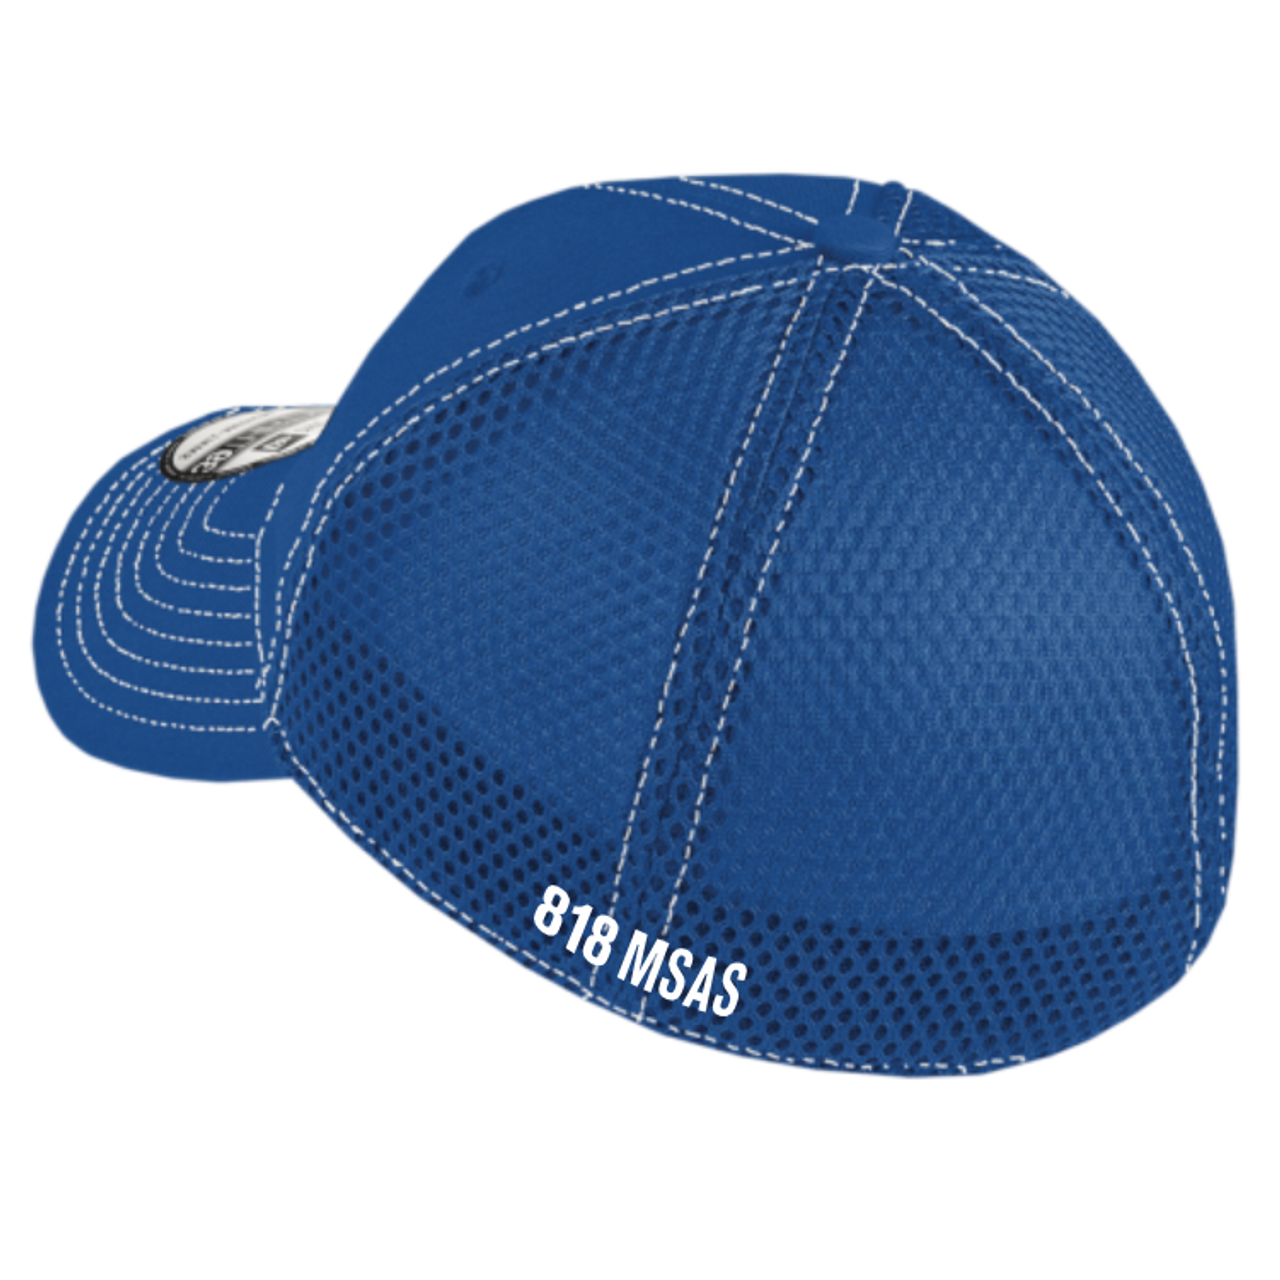 818 MSAS Mesh-Back FlexFit Hat, Royal/White